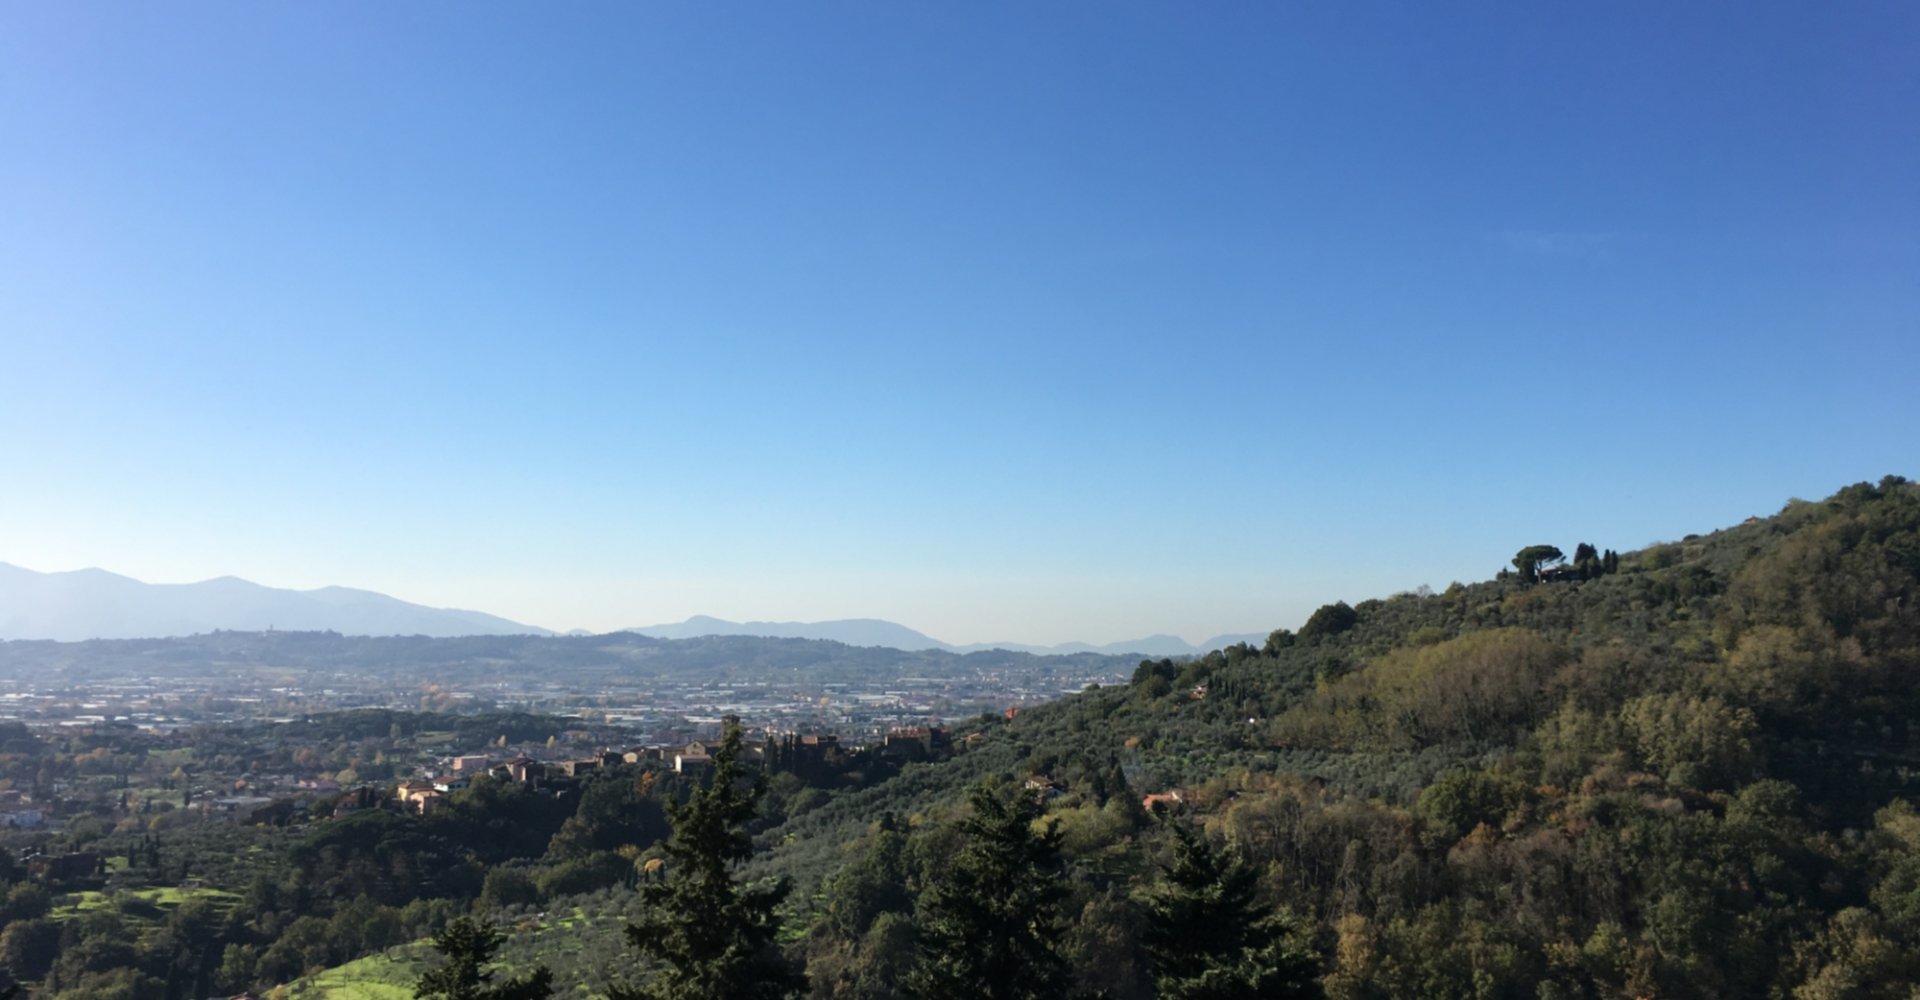 El panorama de Valdinievole